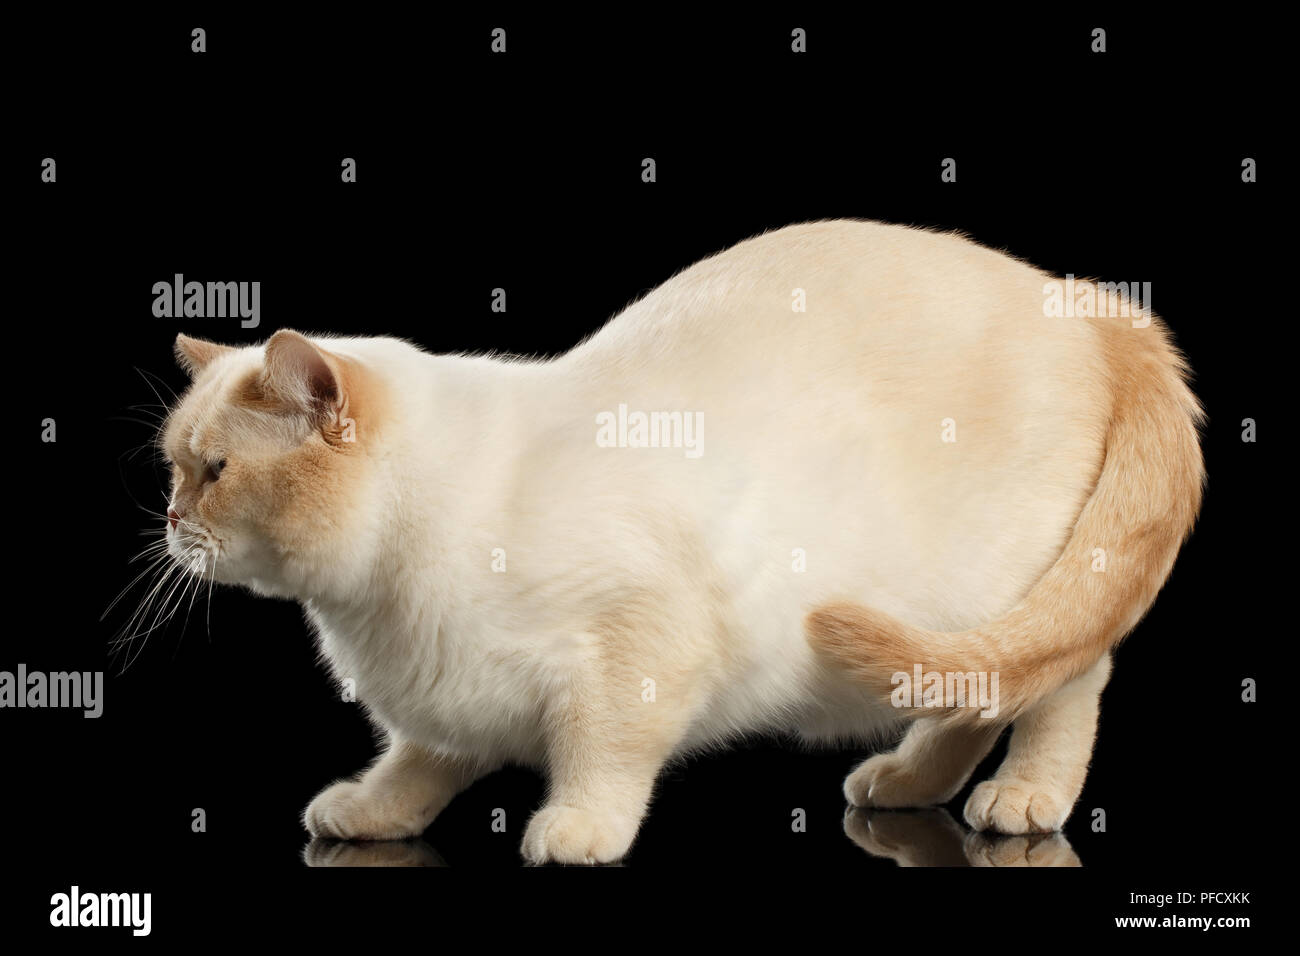 Cute Black Cat Fat Cat Poses Stock Vector (Royalty Free) 1566748159